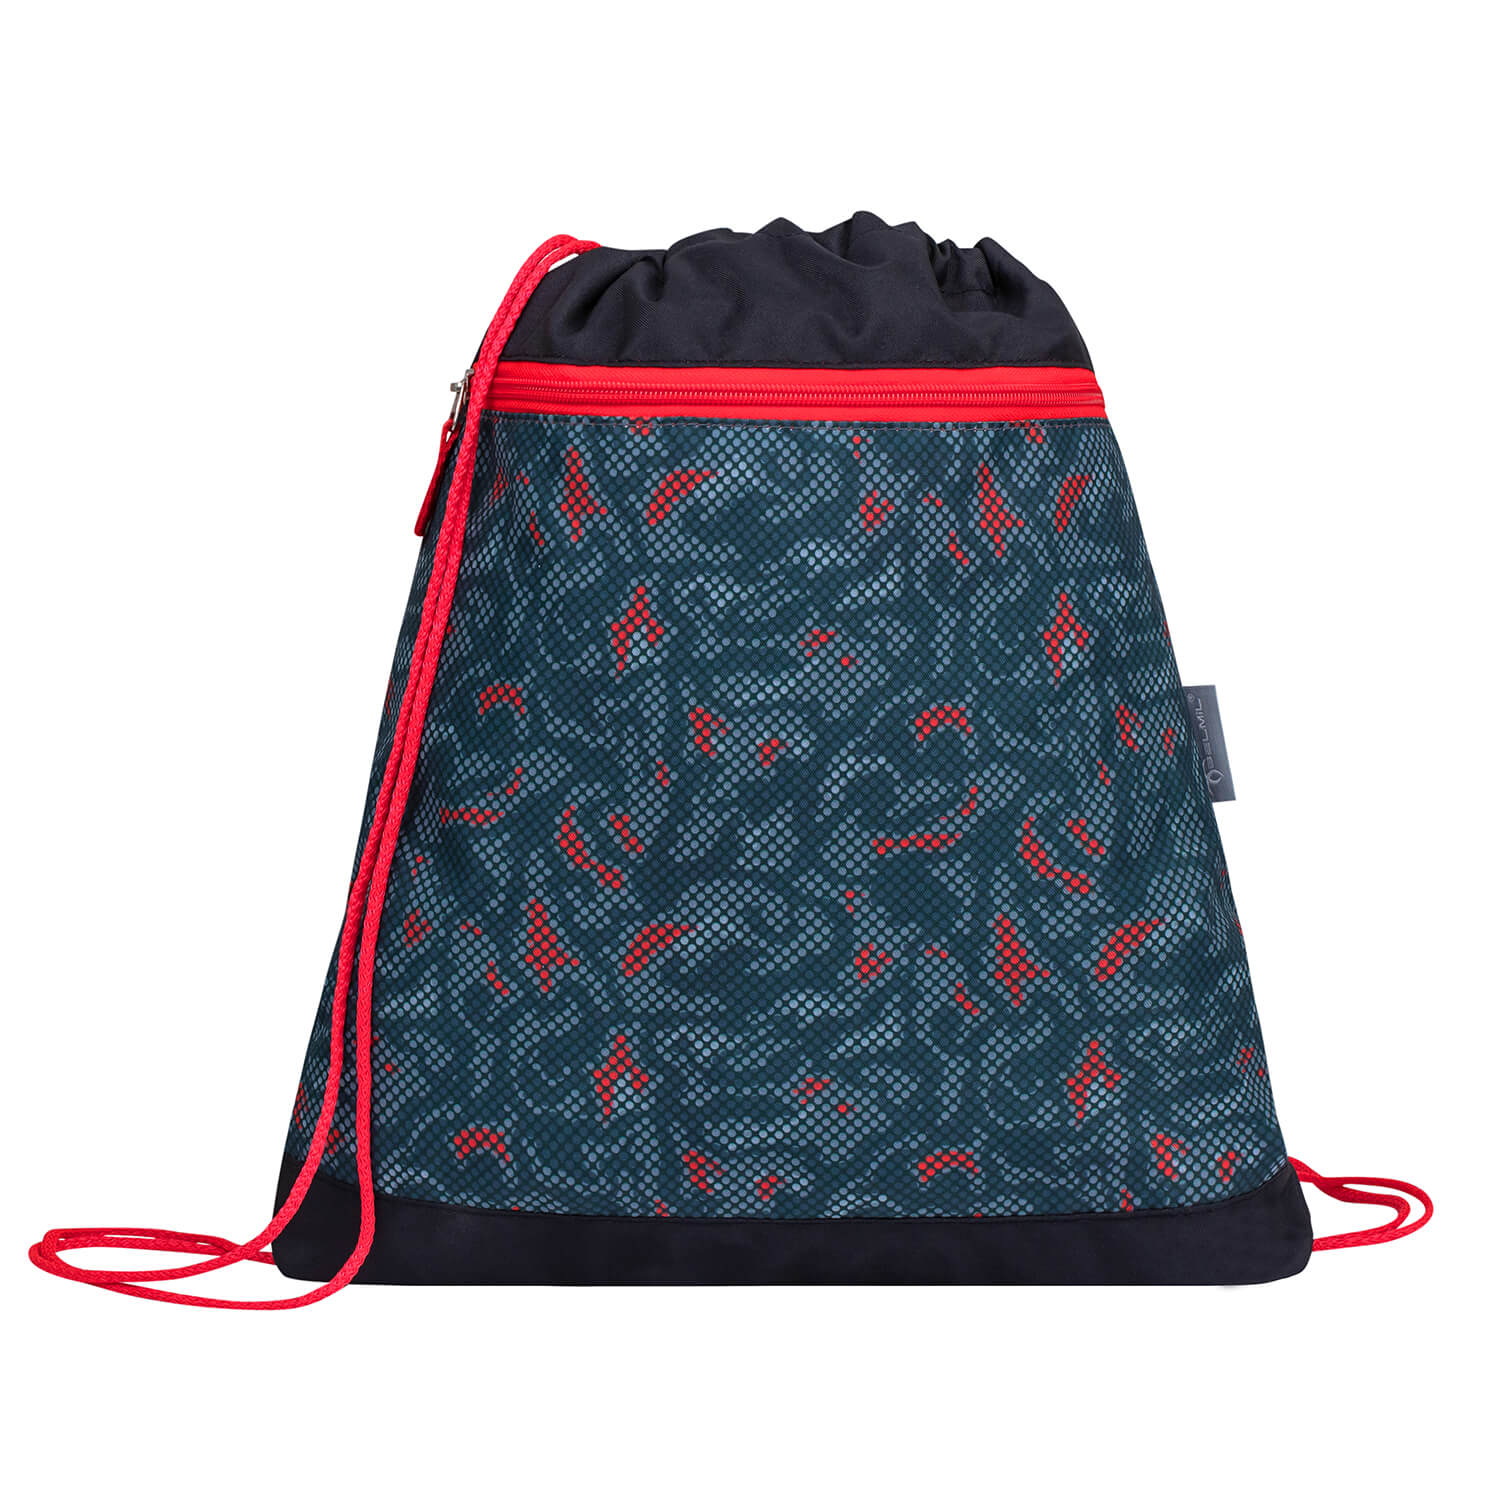 Classy Red Dots schoolbag set 4 pcs